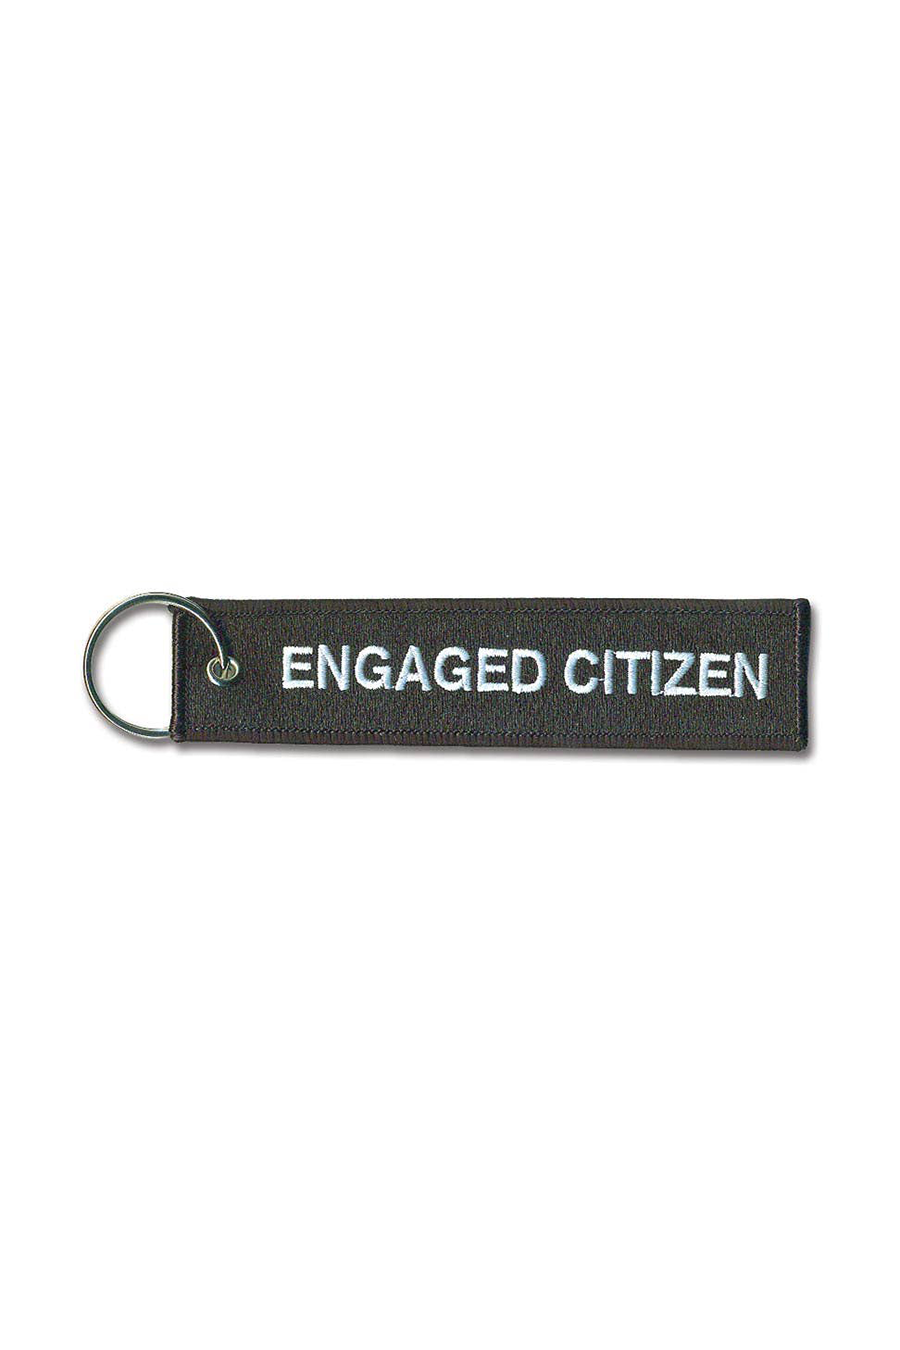 Engaged Citizen Keychain